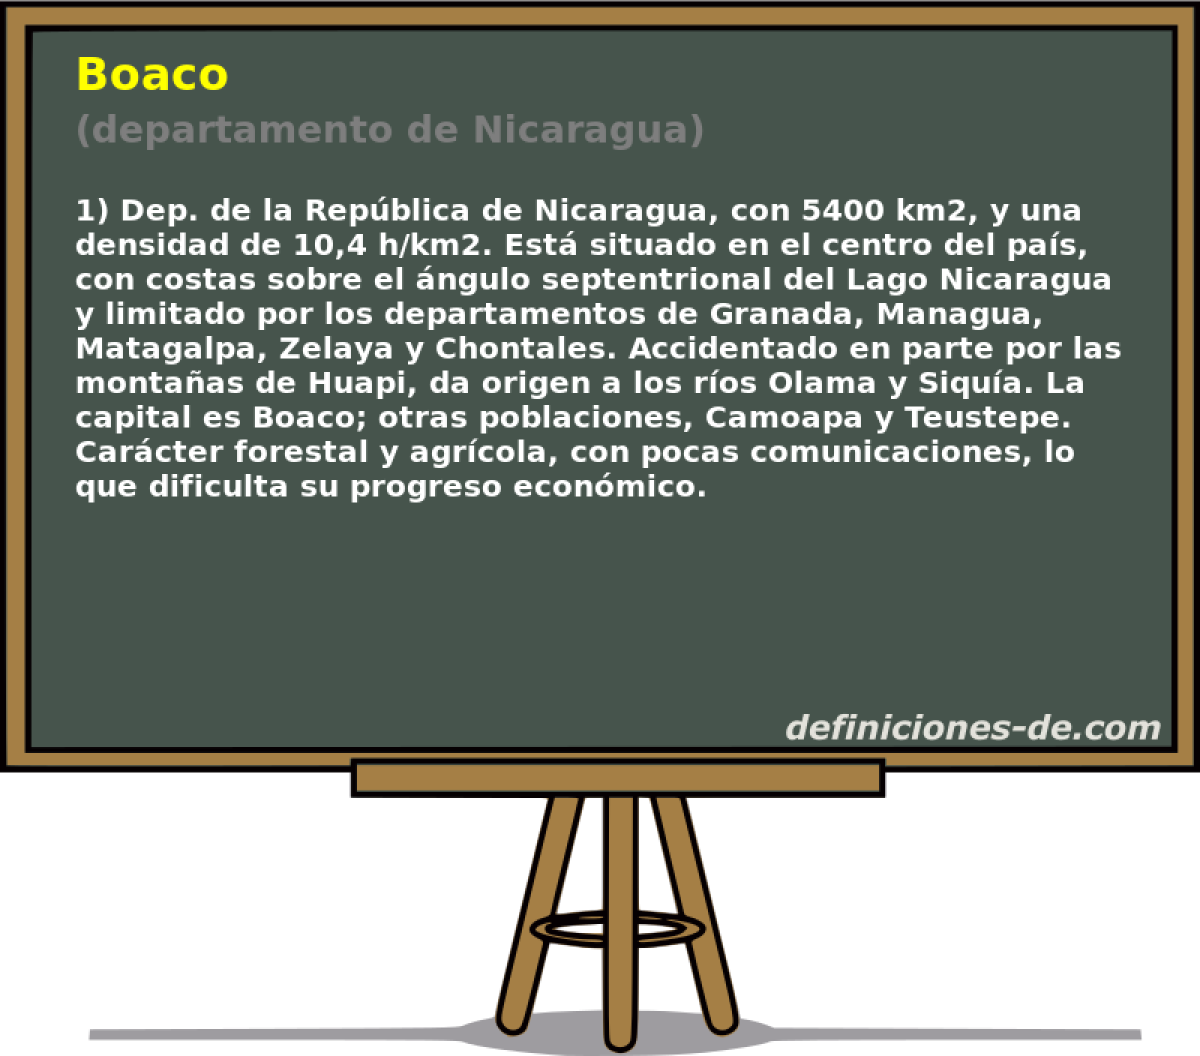 Boaco (departamento de Nicaragua)